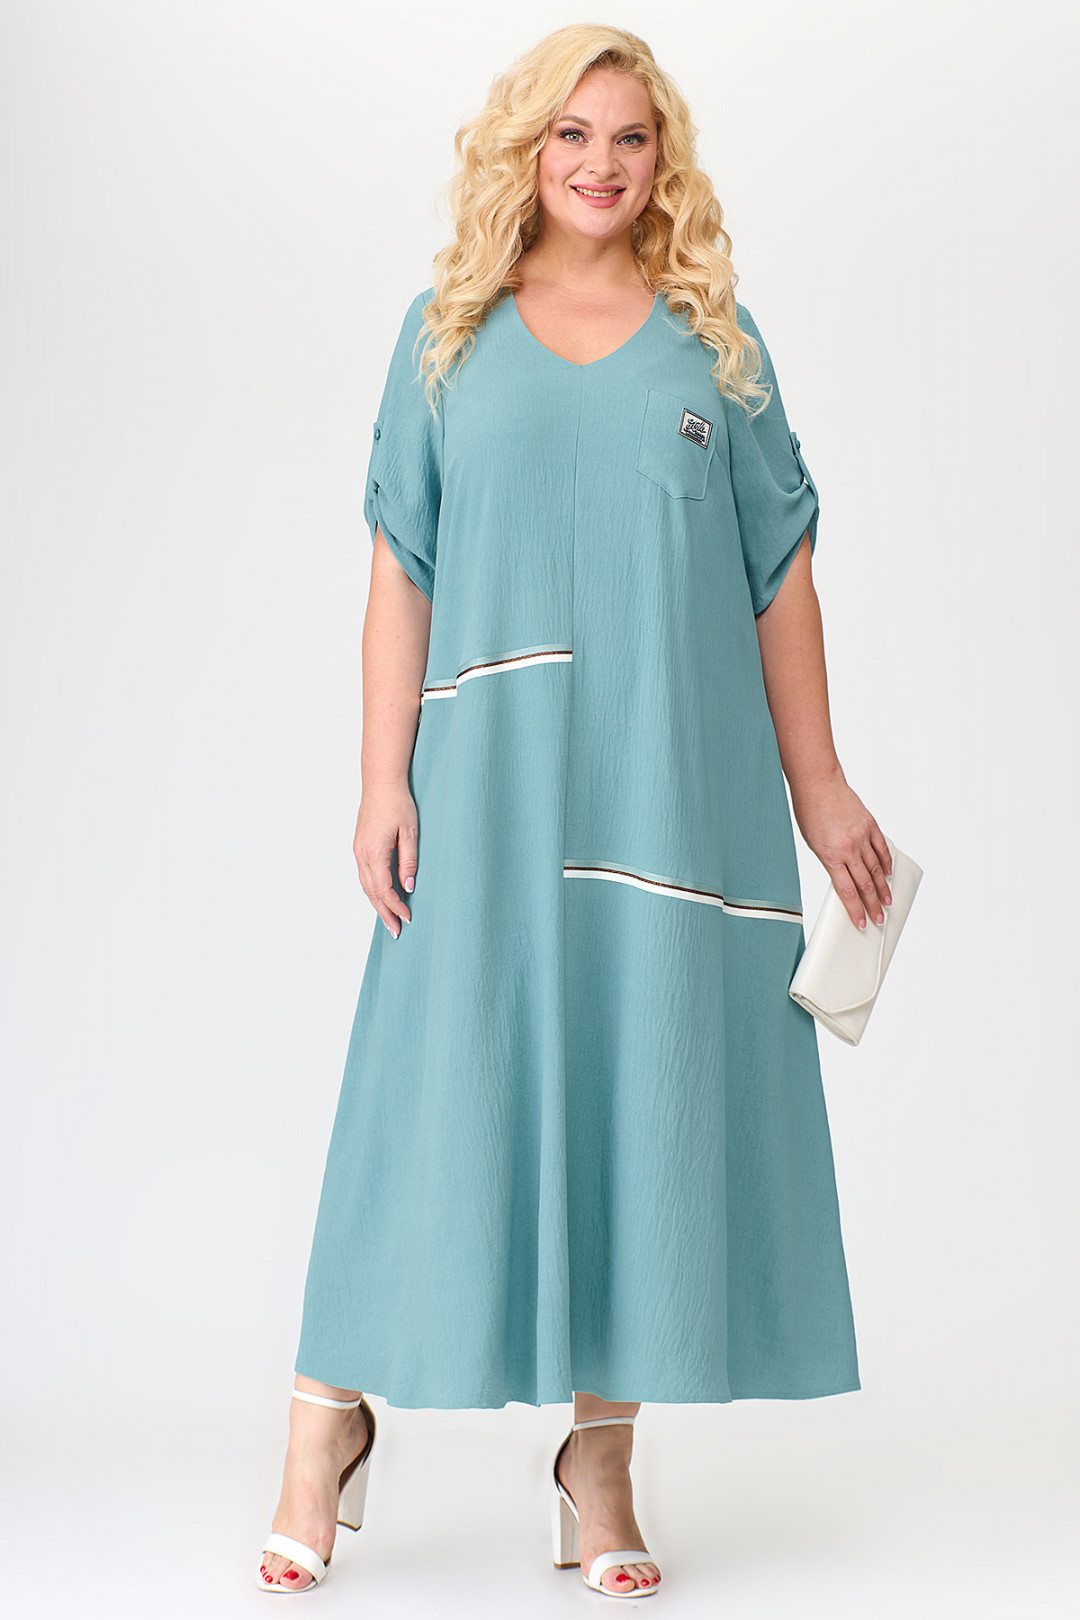 Платье ALGRANDA (Новелла Шарм) A3686-6-С